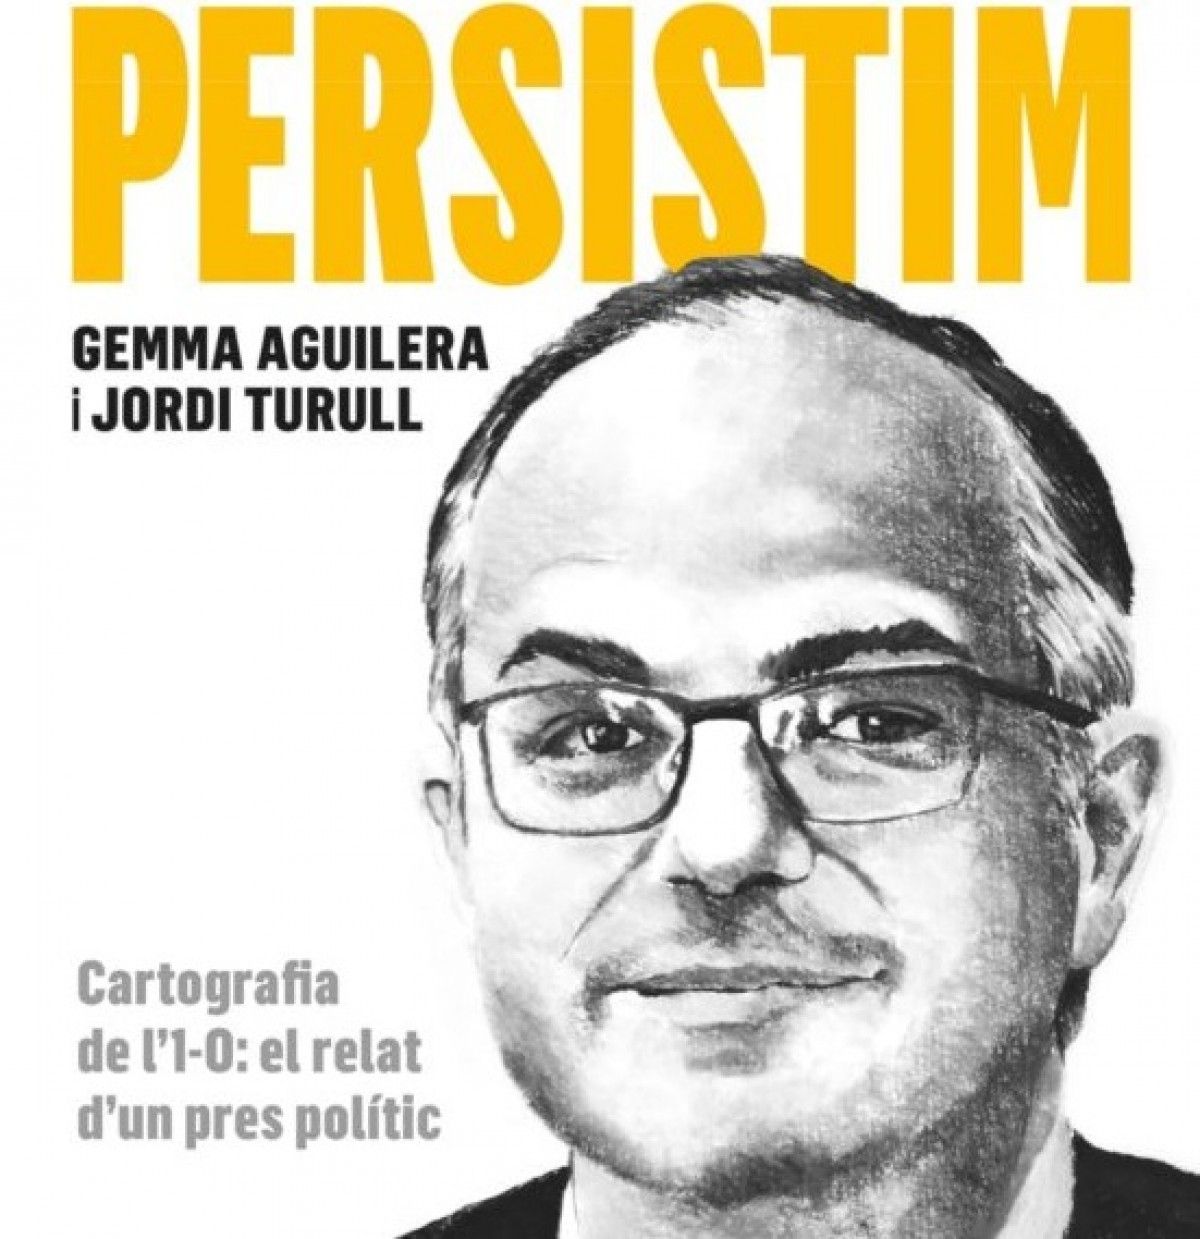 «Persistim», el llibre on Jordi Turull parla del Procés, es presentarà a Sant Cugat